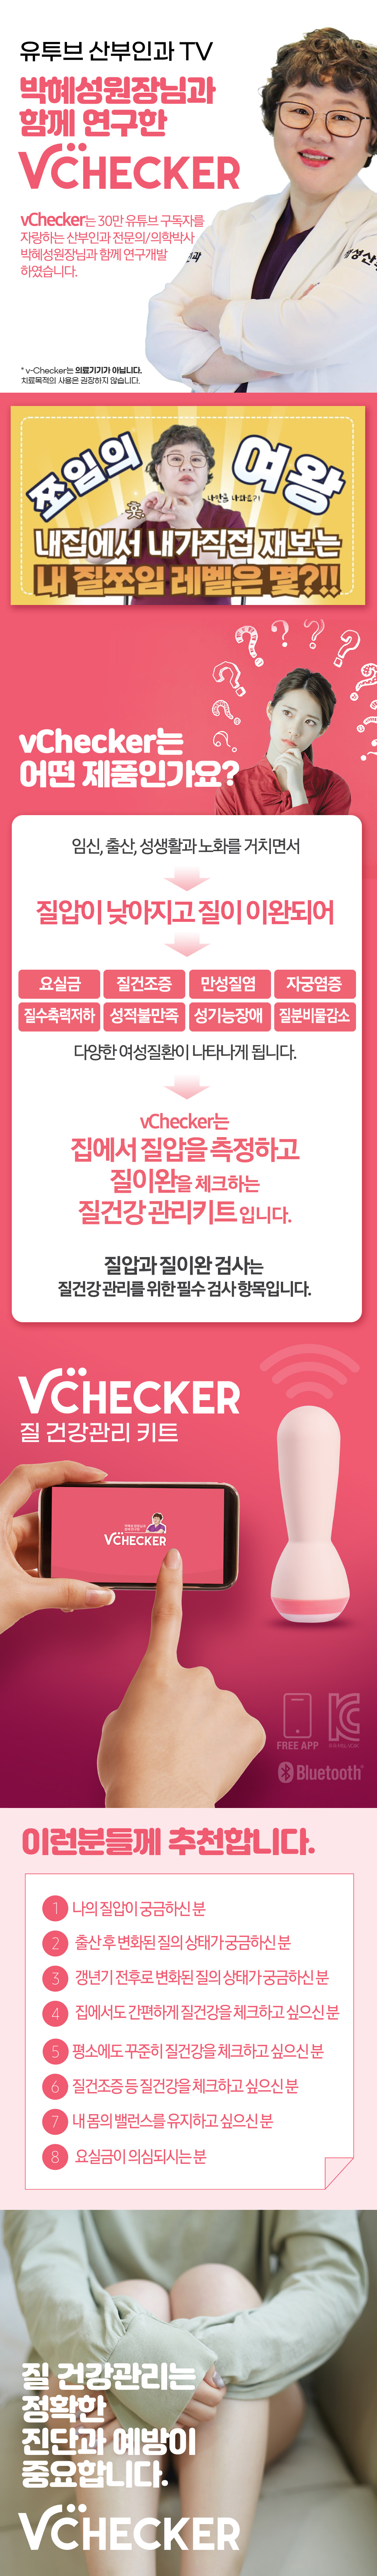 [V-Checker] 브이체커 셀프 질압 측정기